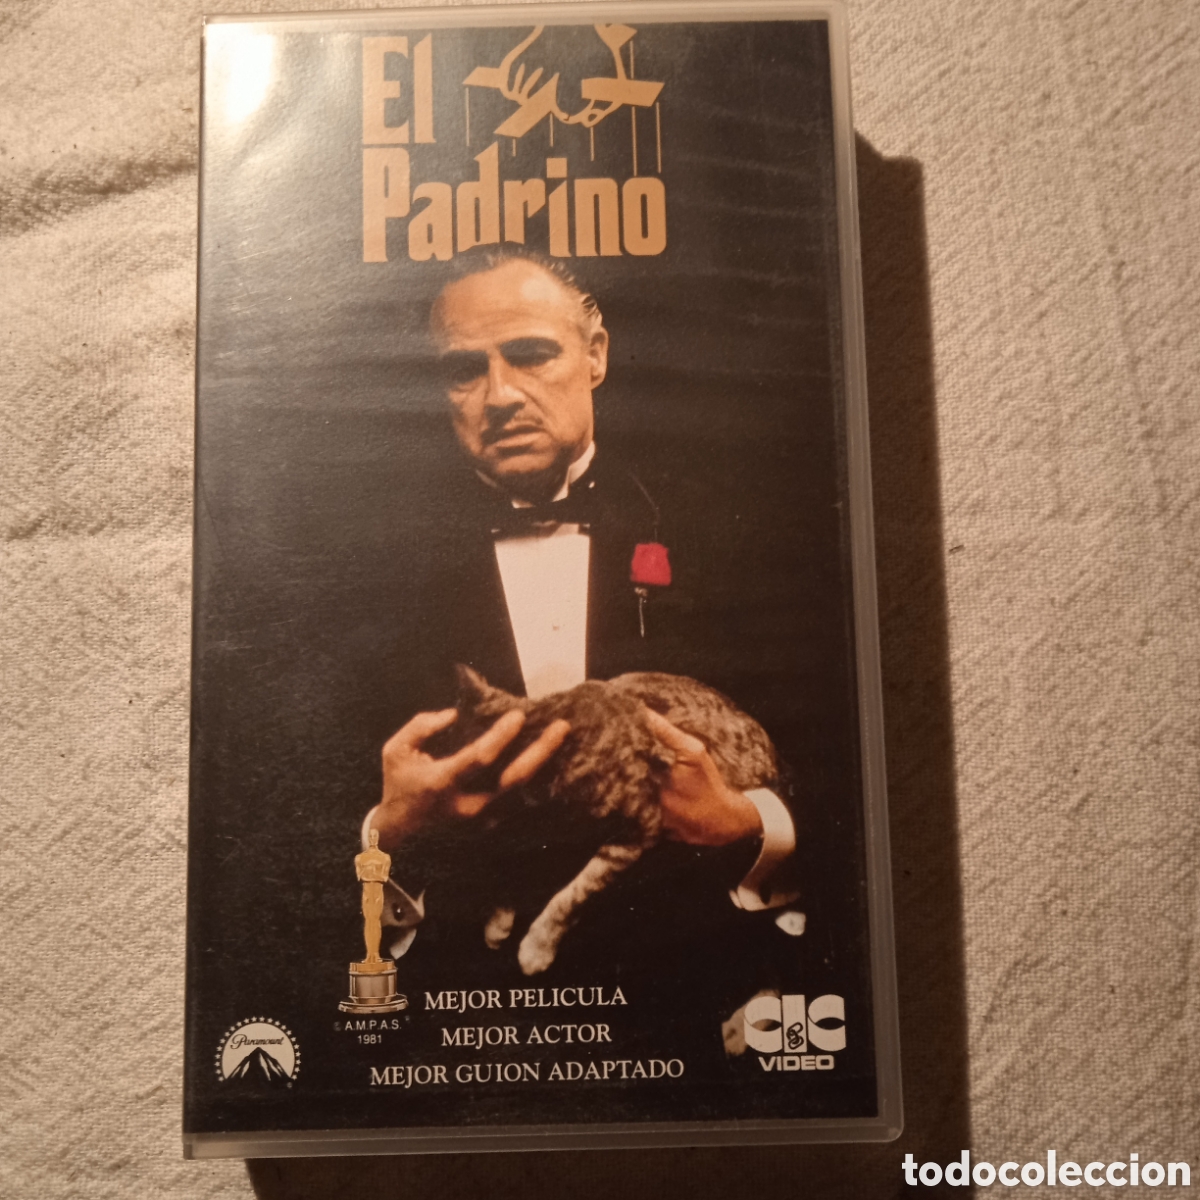 El padrino - Movies on Google Play